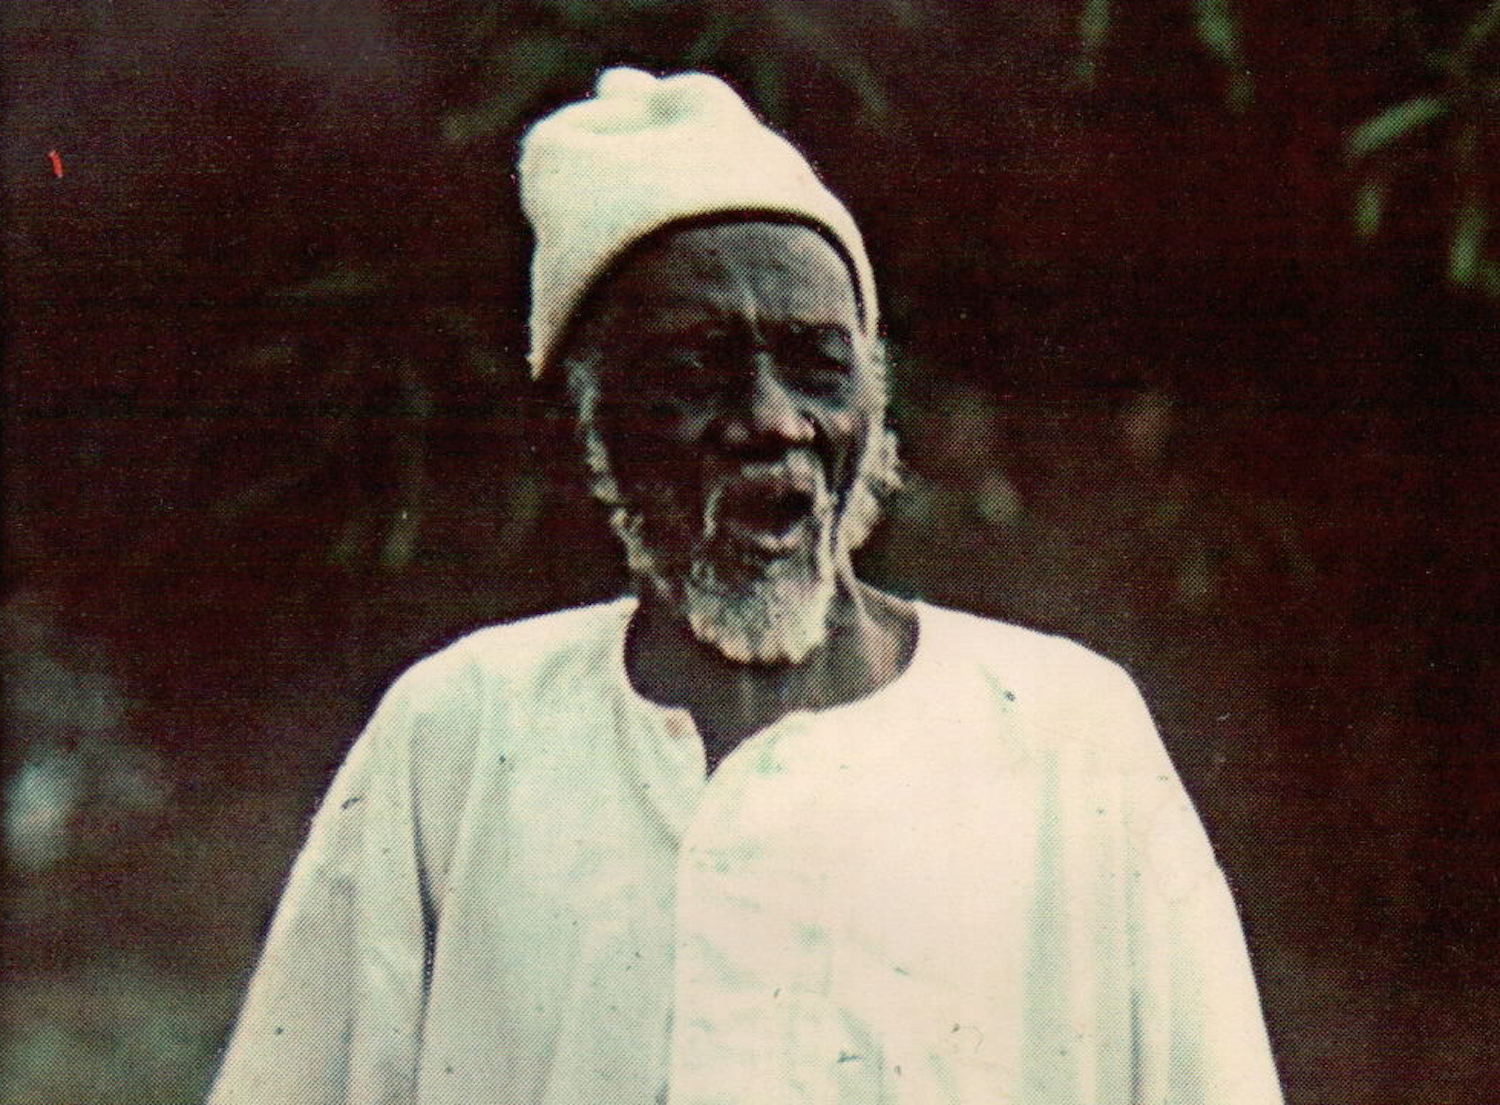 African WWI veteran Kande Kamera. Photo taken circa 1975.